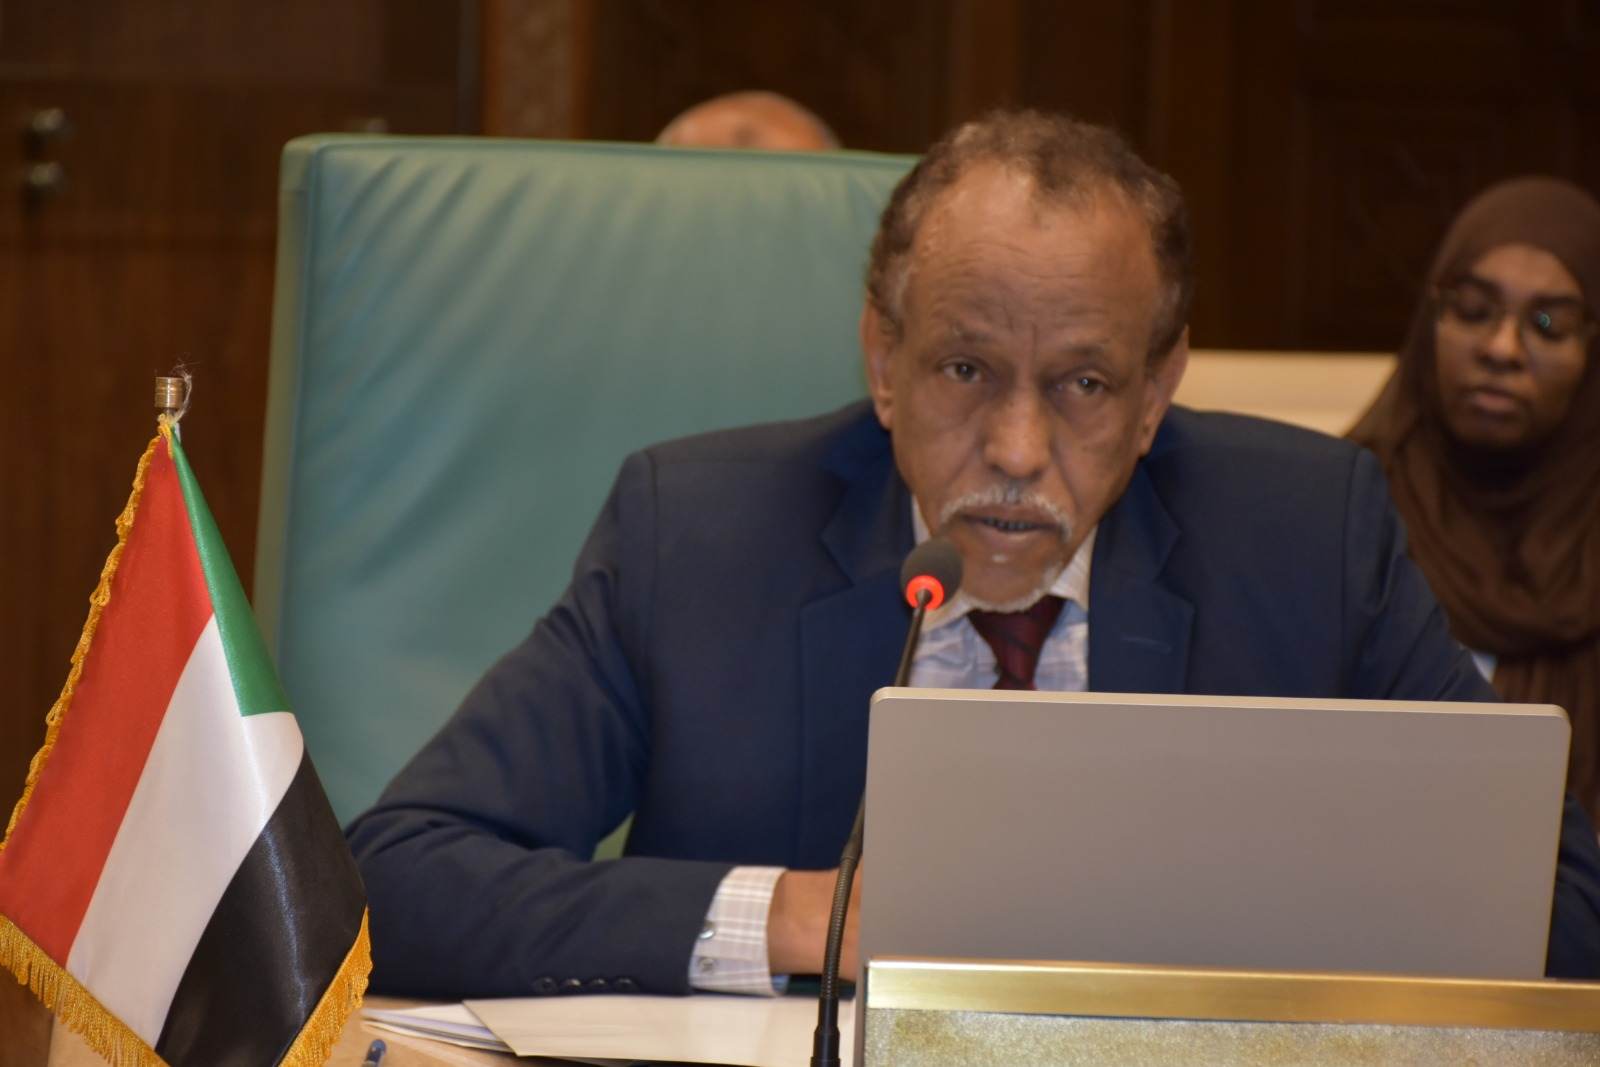 السودان يطالب الجامعة العربية بإصدار توصيات بتسوية الأزمة داخليا بعيدا عن التدخلات الدولية